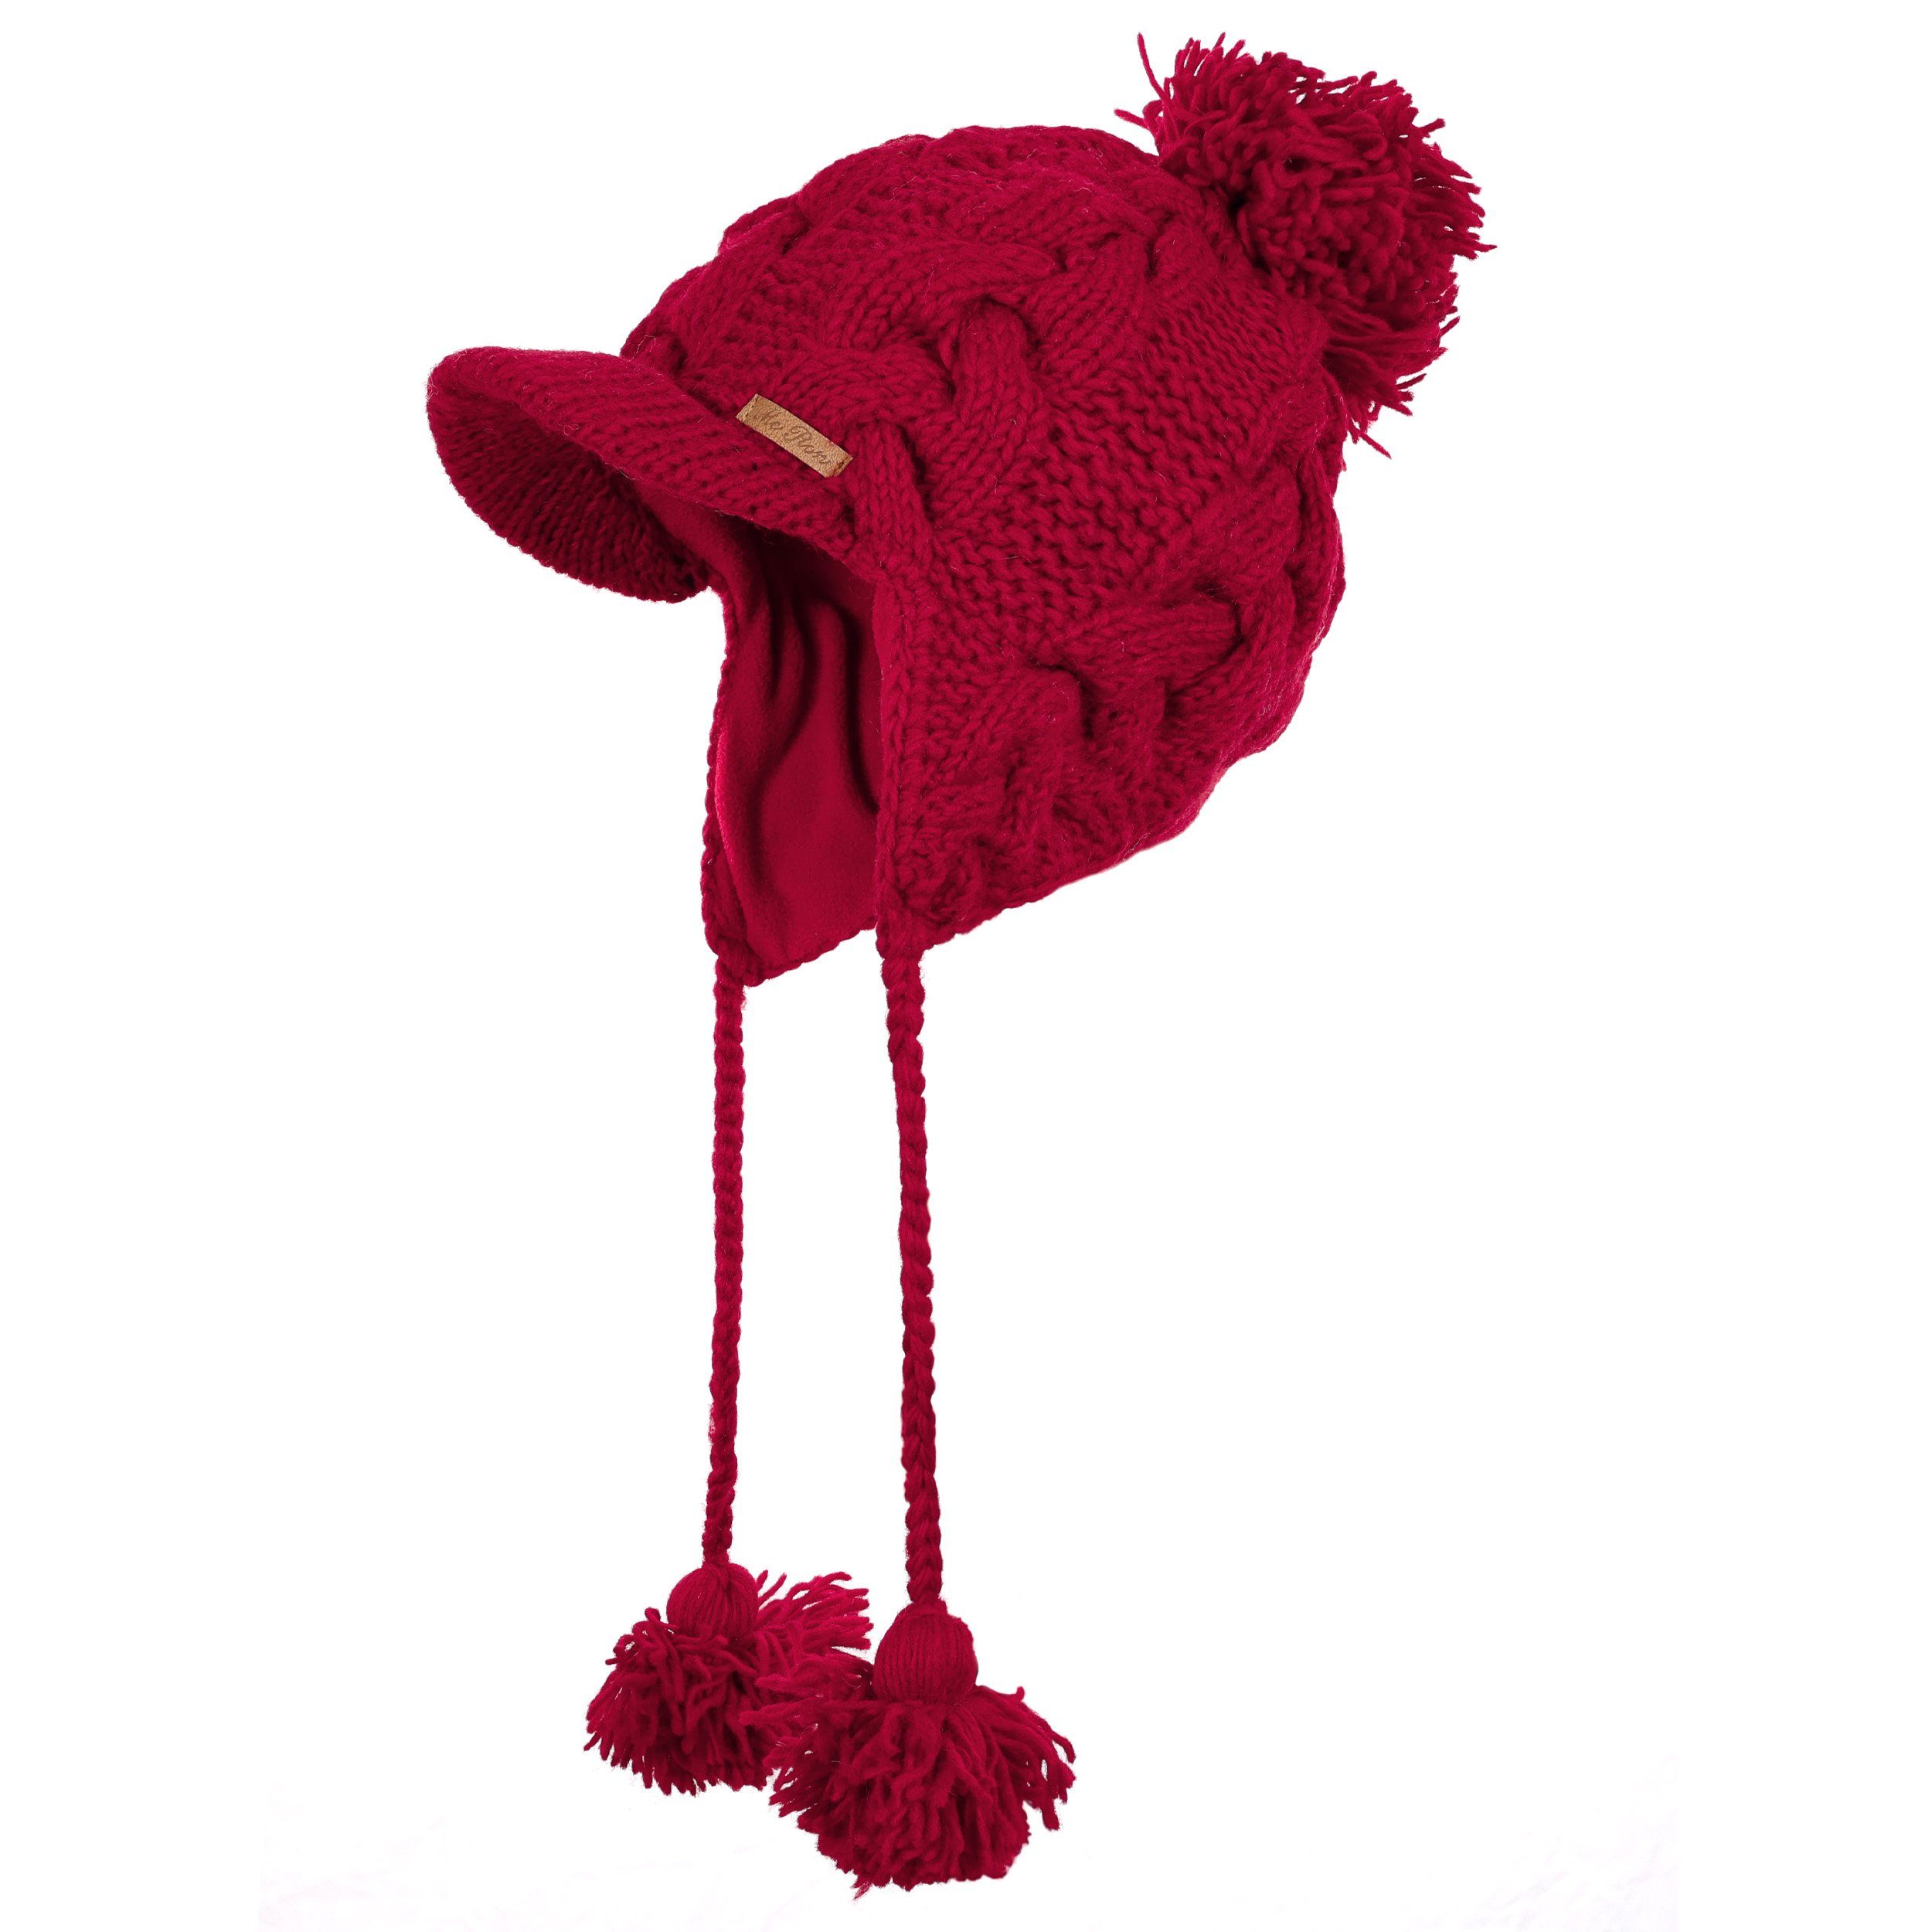 McRon Strickmütze Wollmütze Modell Susi gefüttert mit Fleece Rot